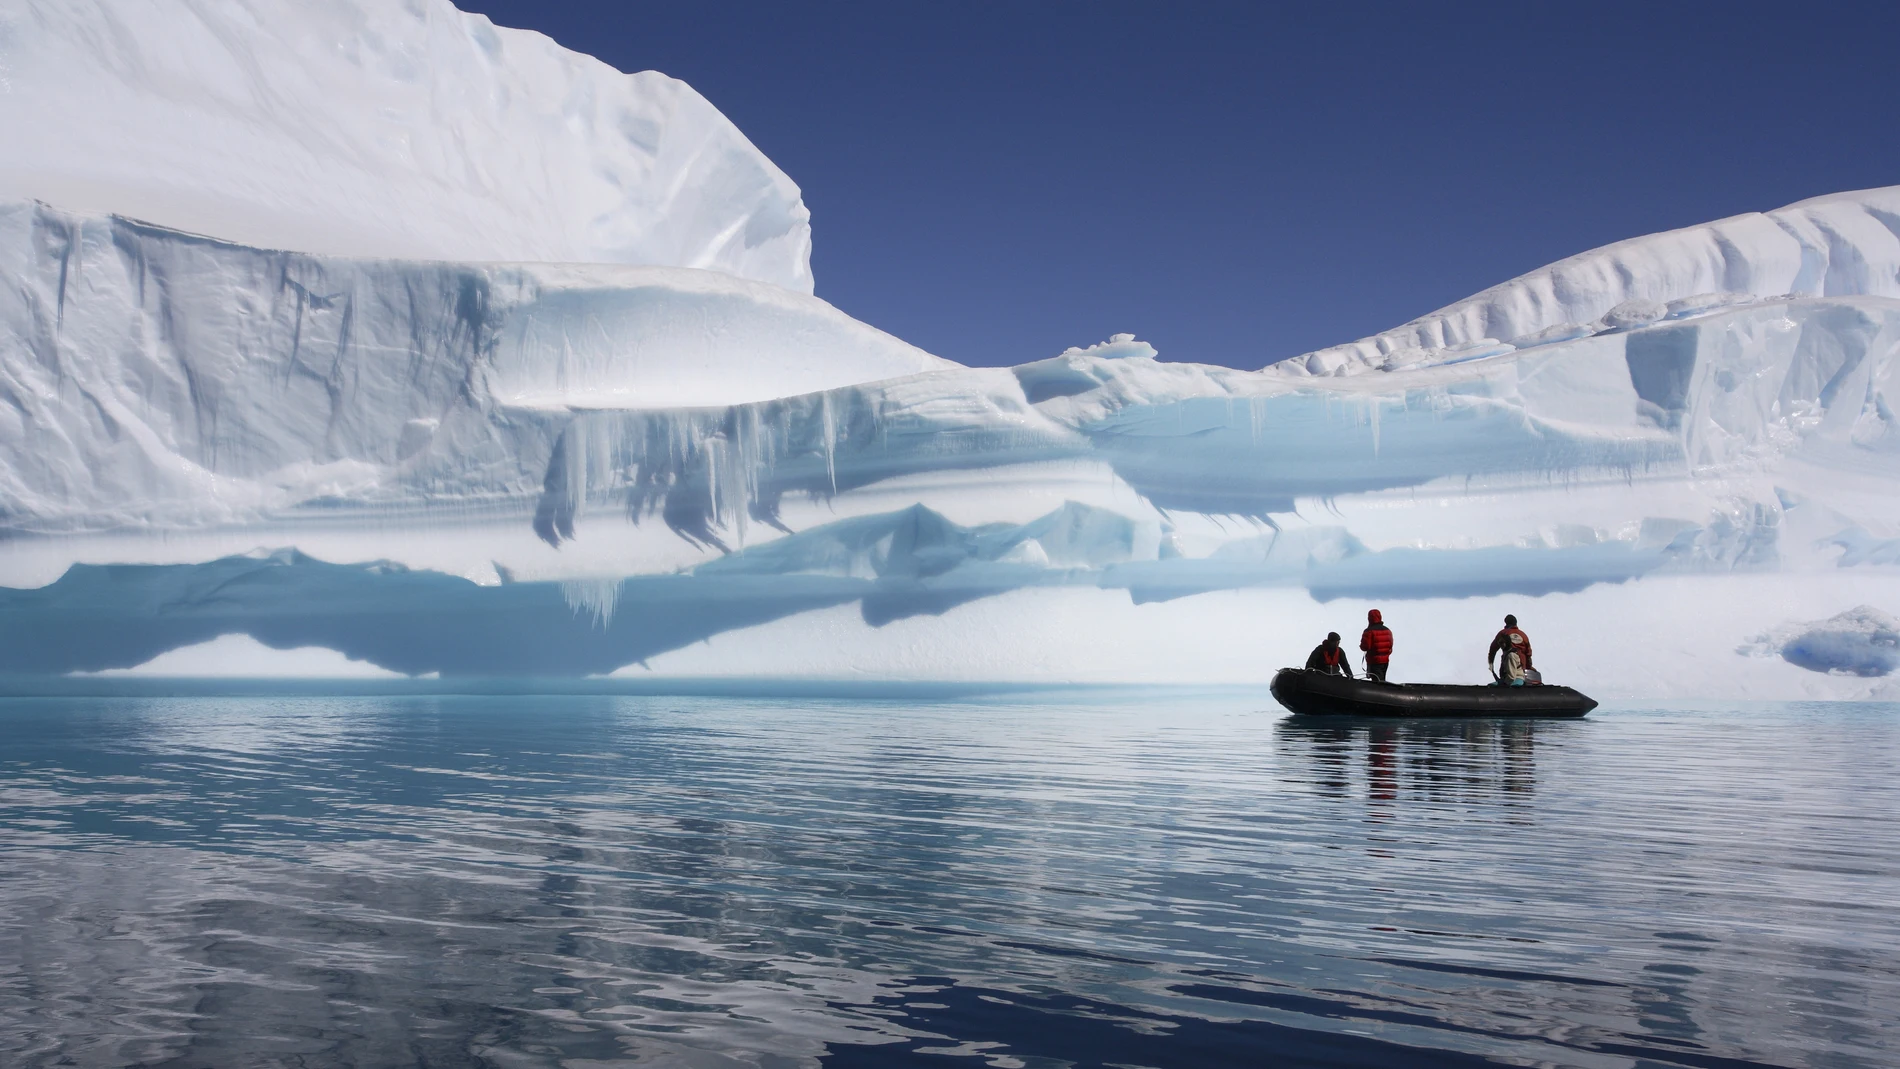 La Antártida es una fuente de abundantes recursos naturales e investigaciones científicas, pero nadie tiene su soberanía